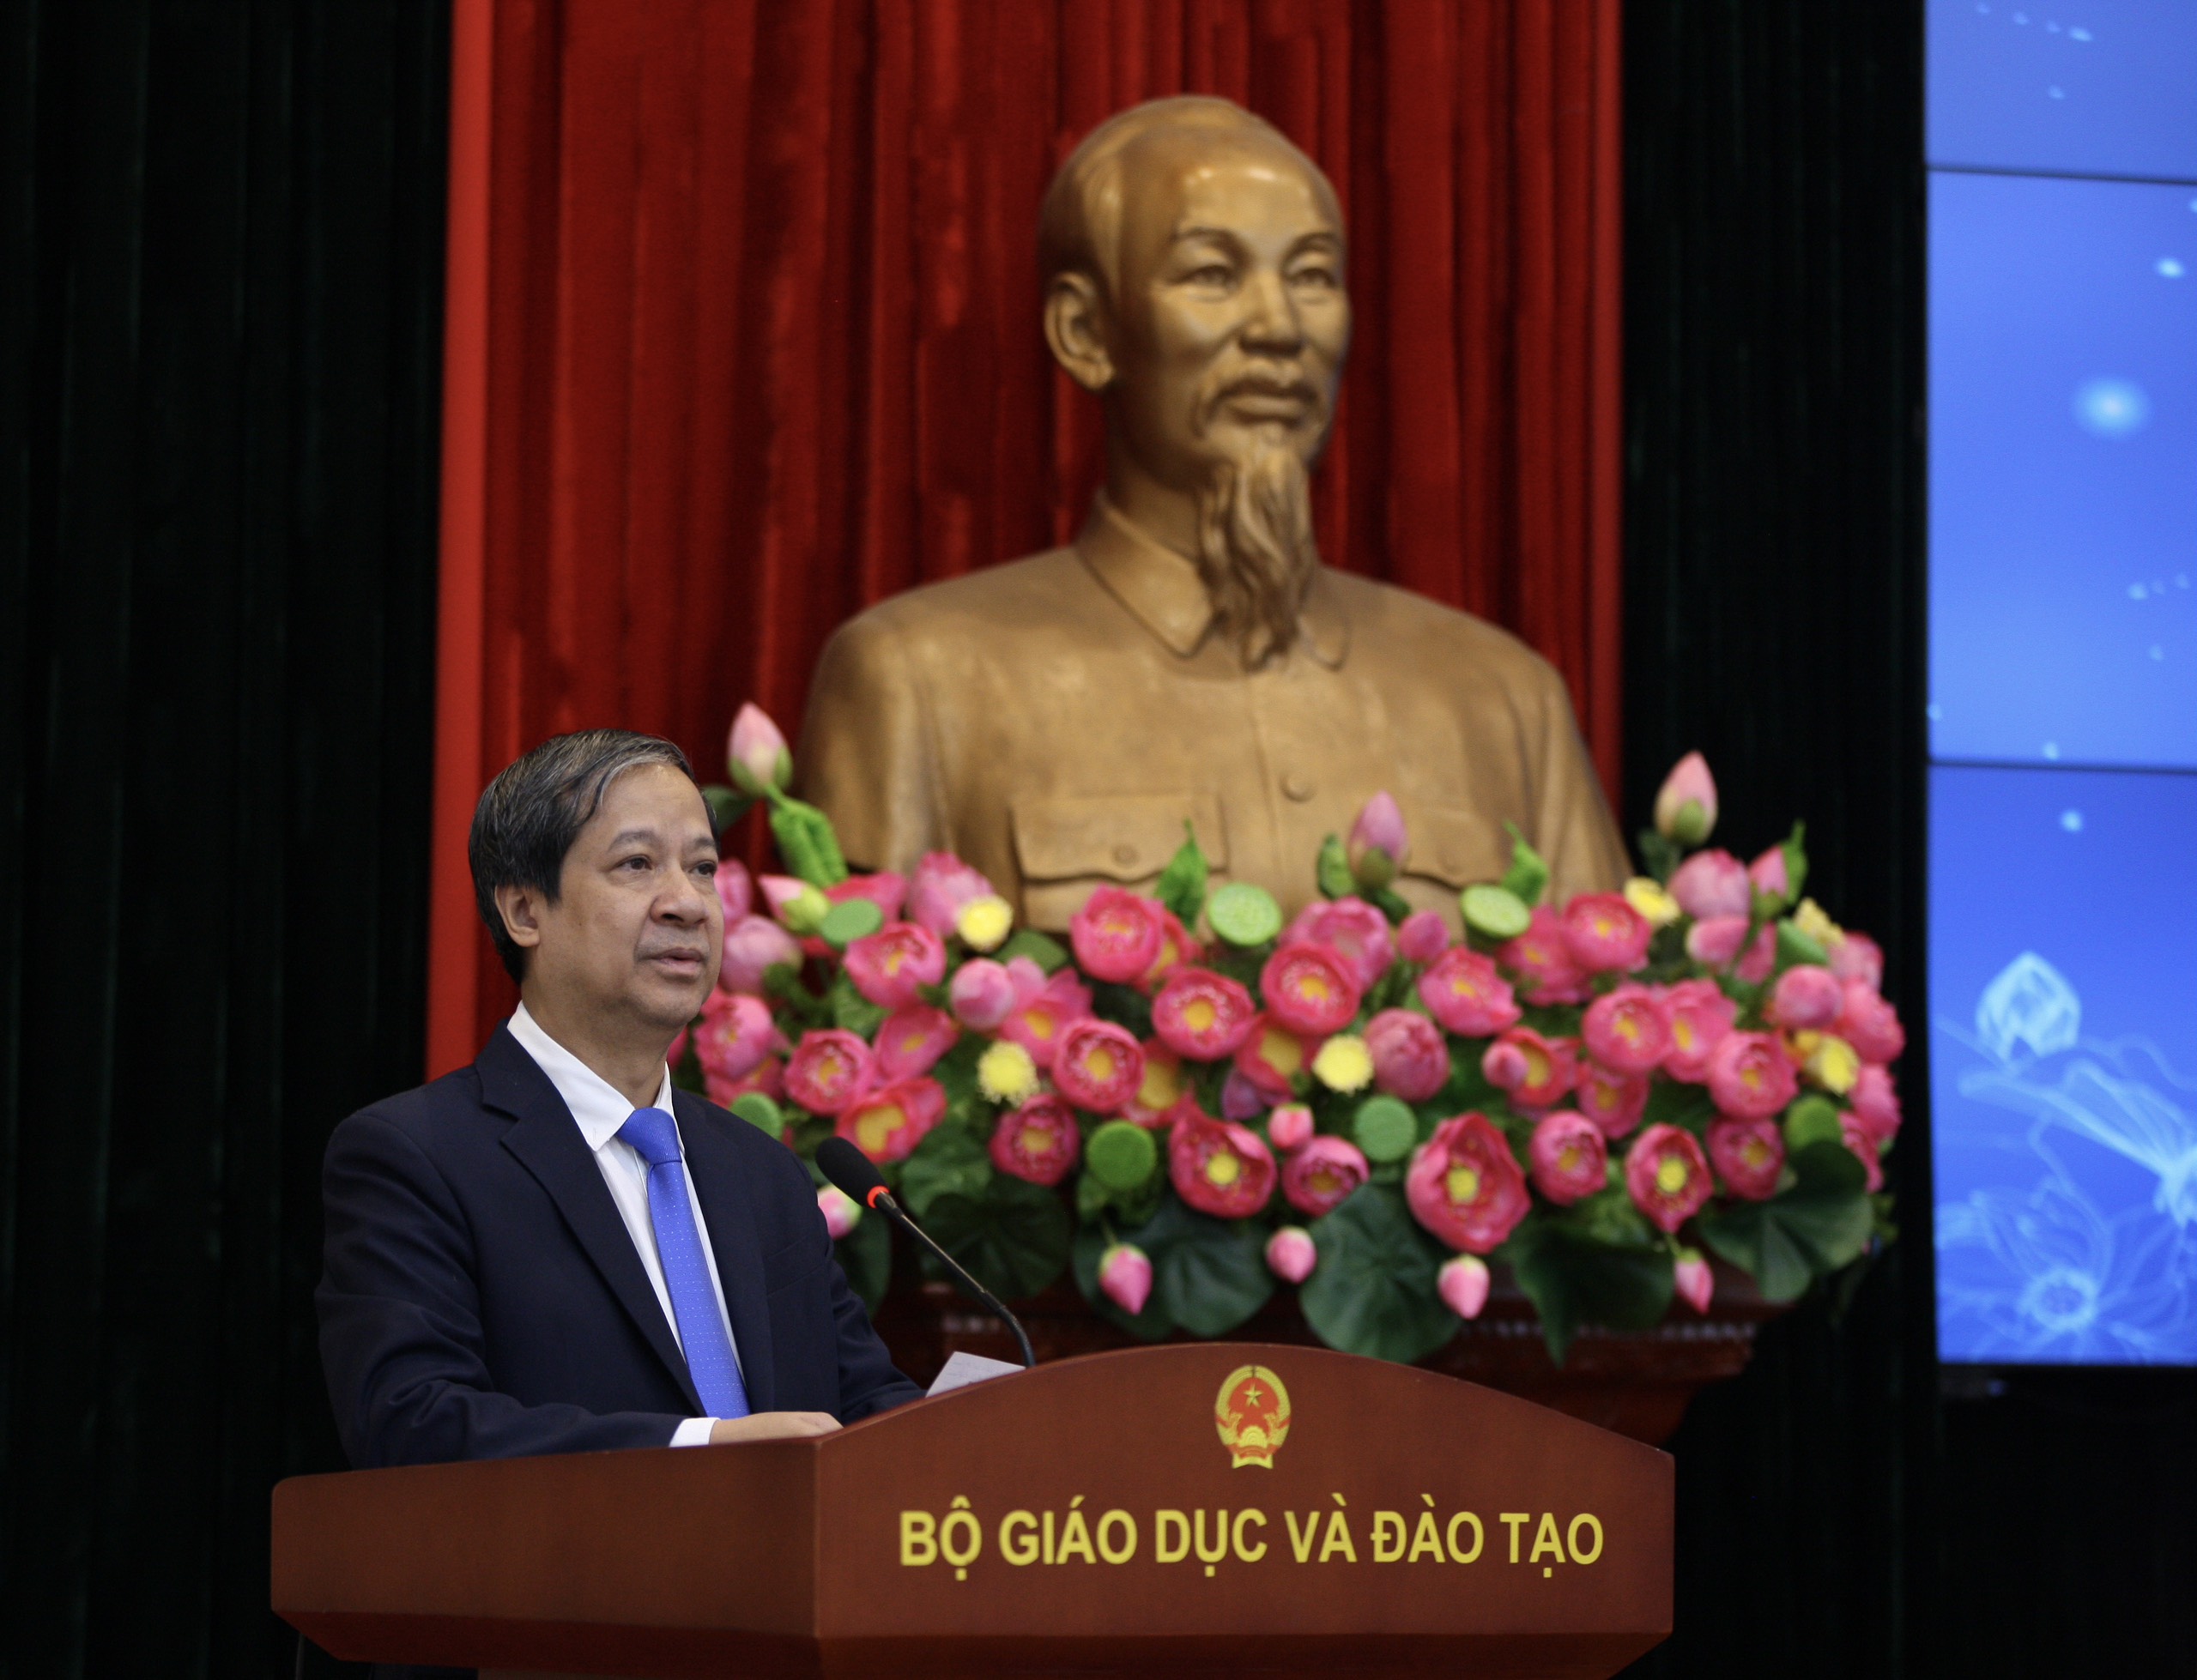 Bộ trưởng Nguyễn Kim Sơn: Năm 2023, ngành Giáo dục nhận được sự tin cậy, chia sẻ, đồng thuận, thấu hiểu nhiều hơn từ Lãnh đạo Đảng, Nhà nước, Quốc hội, Chính phủ, đại biểu Quốc hội, người dân.